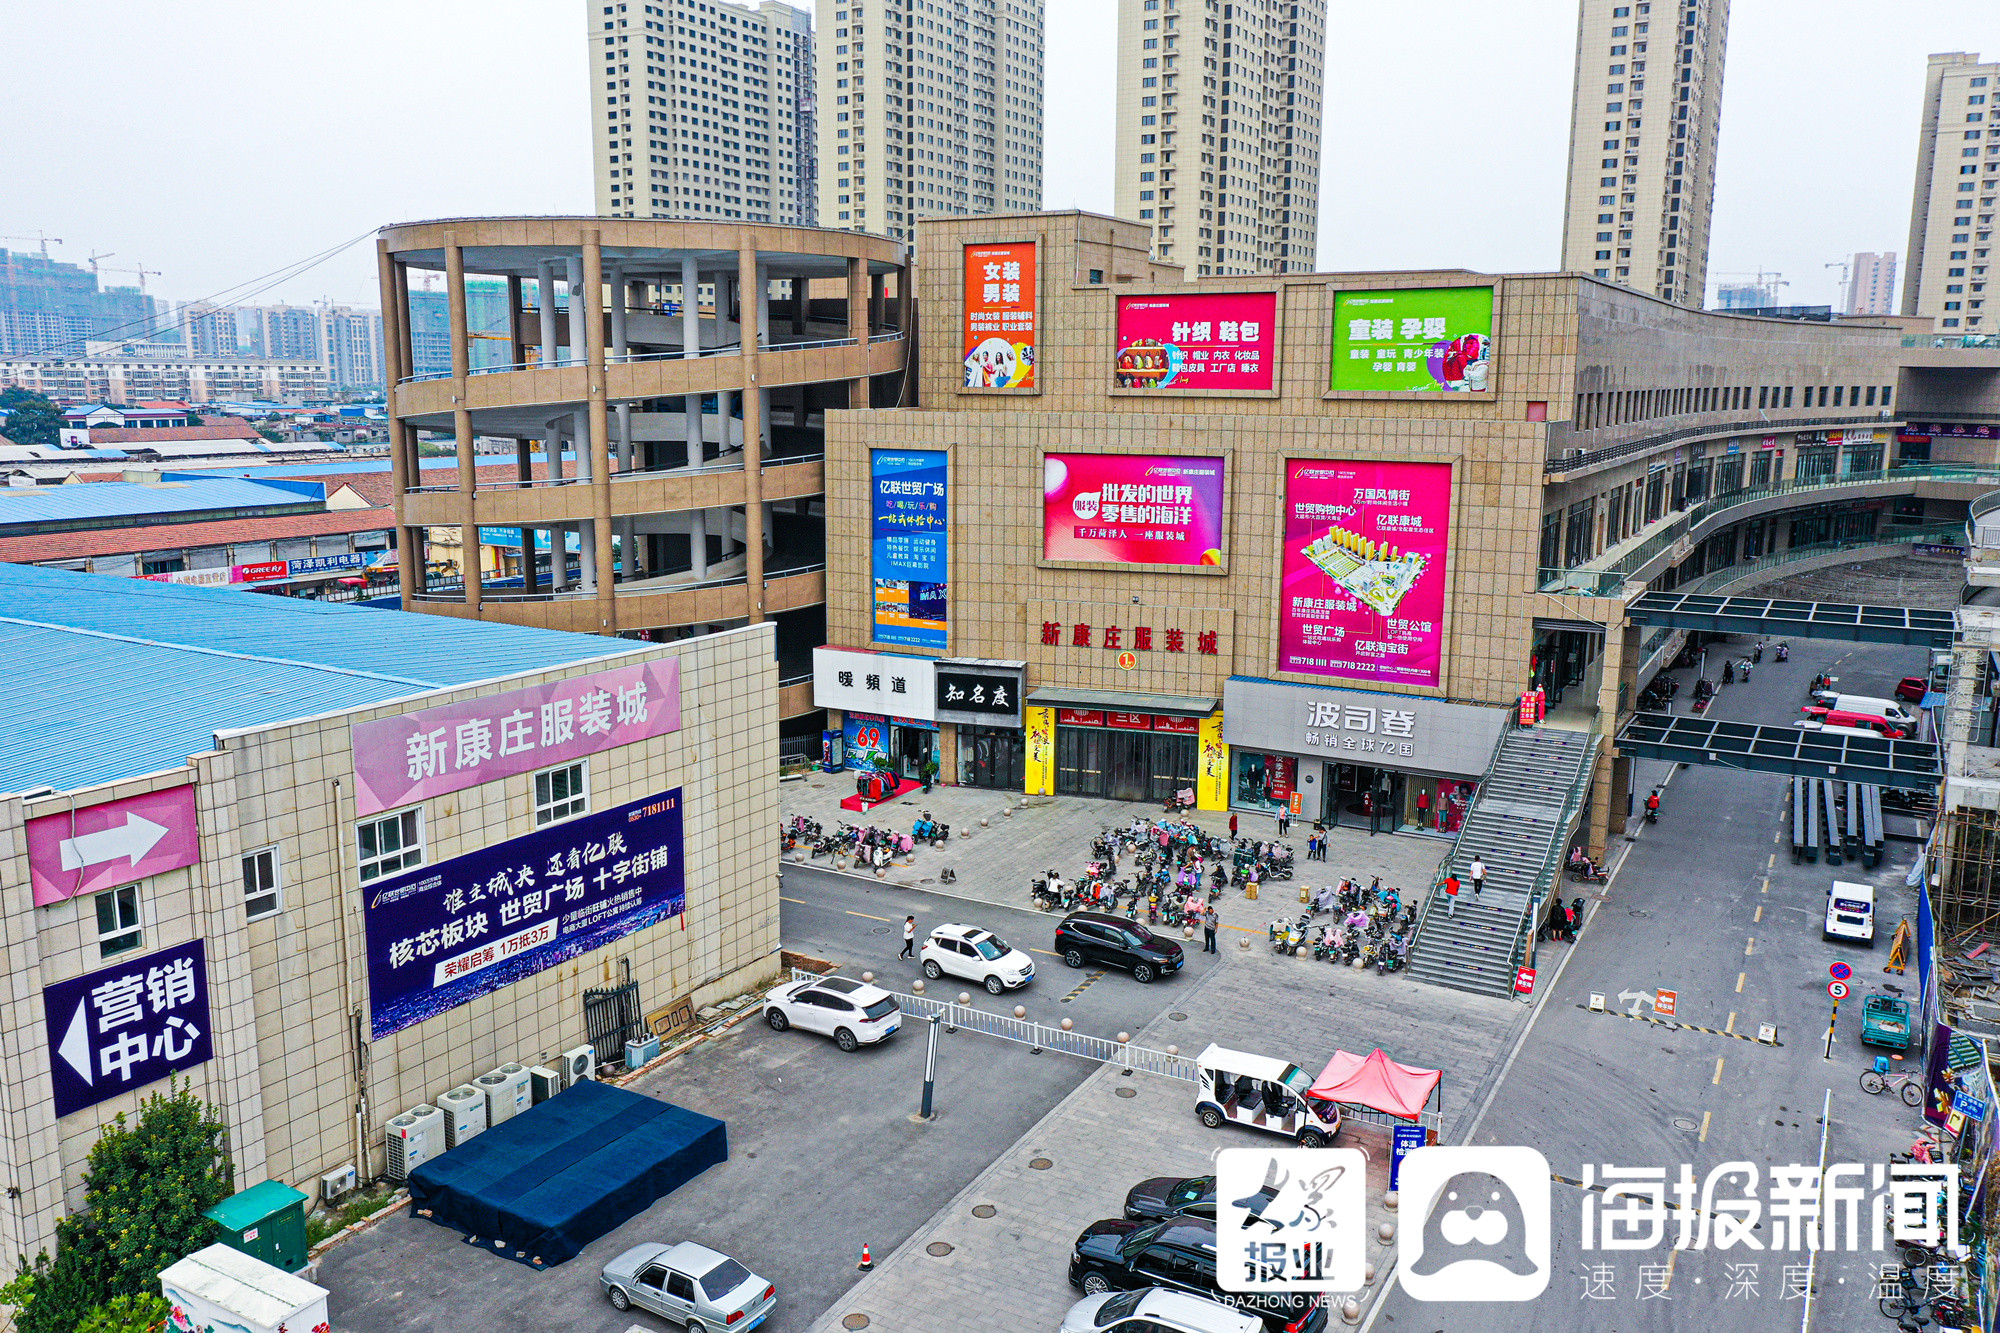 街道两旁商店林立,自清朝起就是菏泽城的商业中心